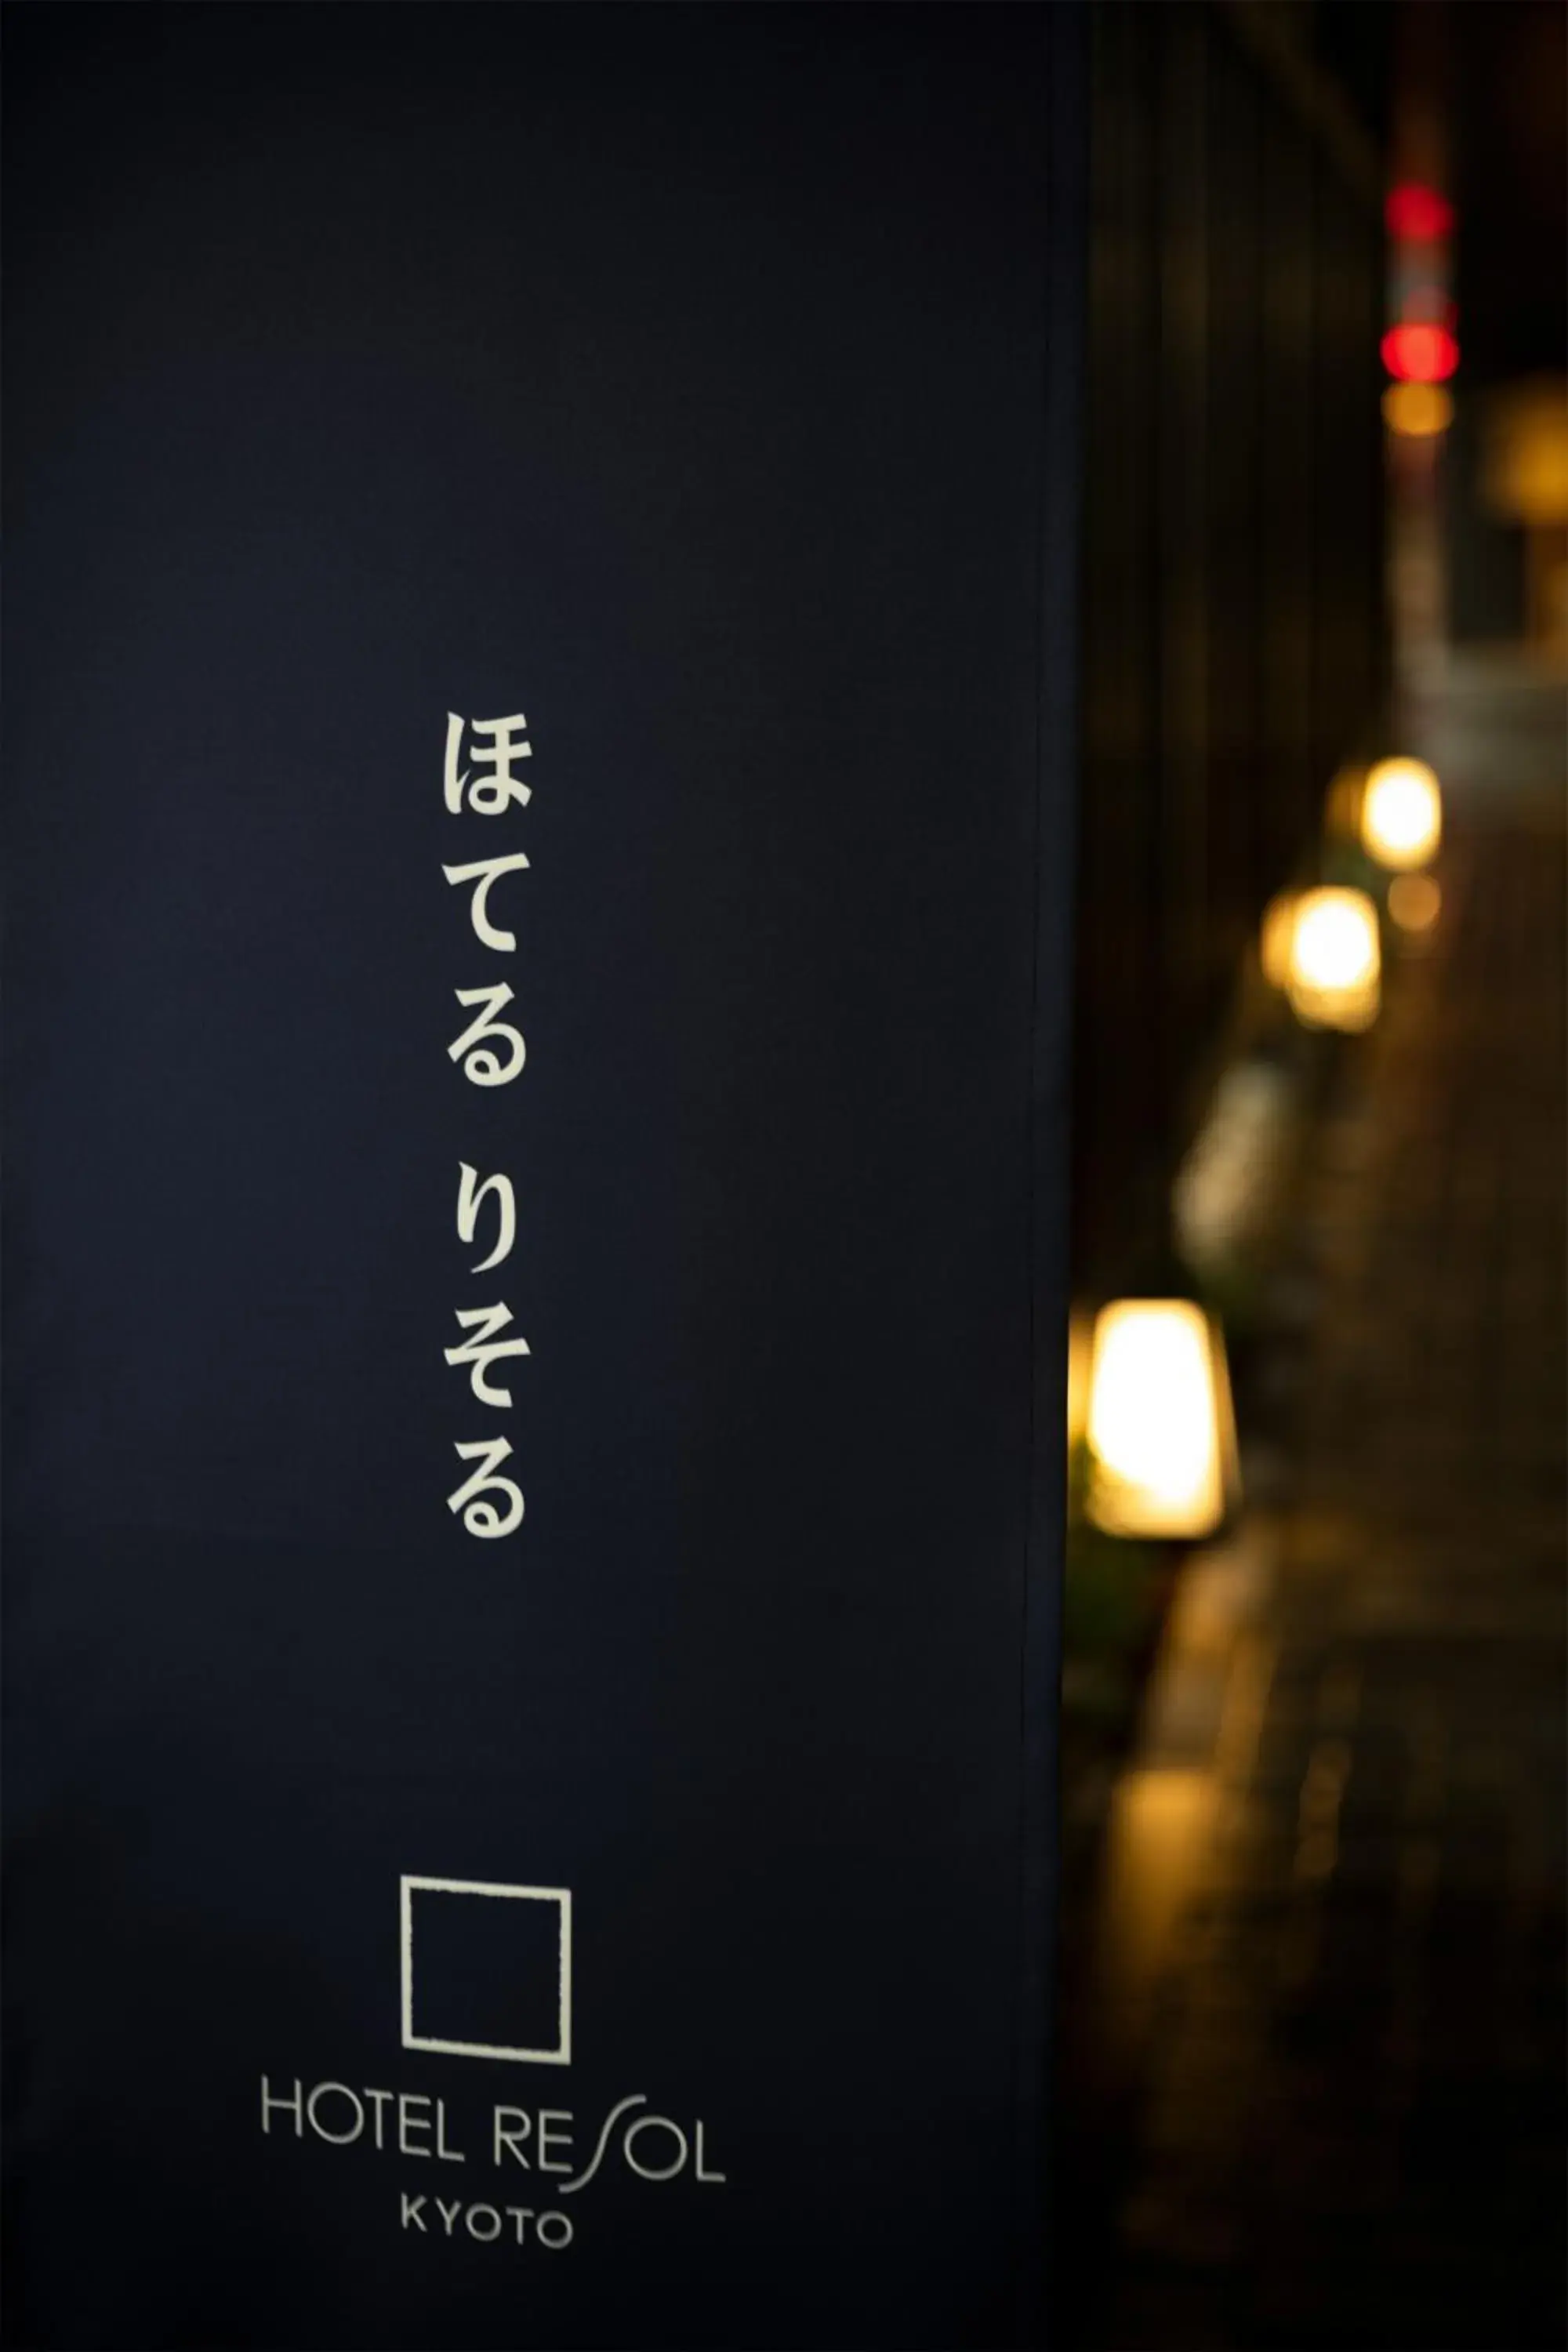 Property logo or sign in Hotel Resol Kyoto Kawaramachi Sanjo